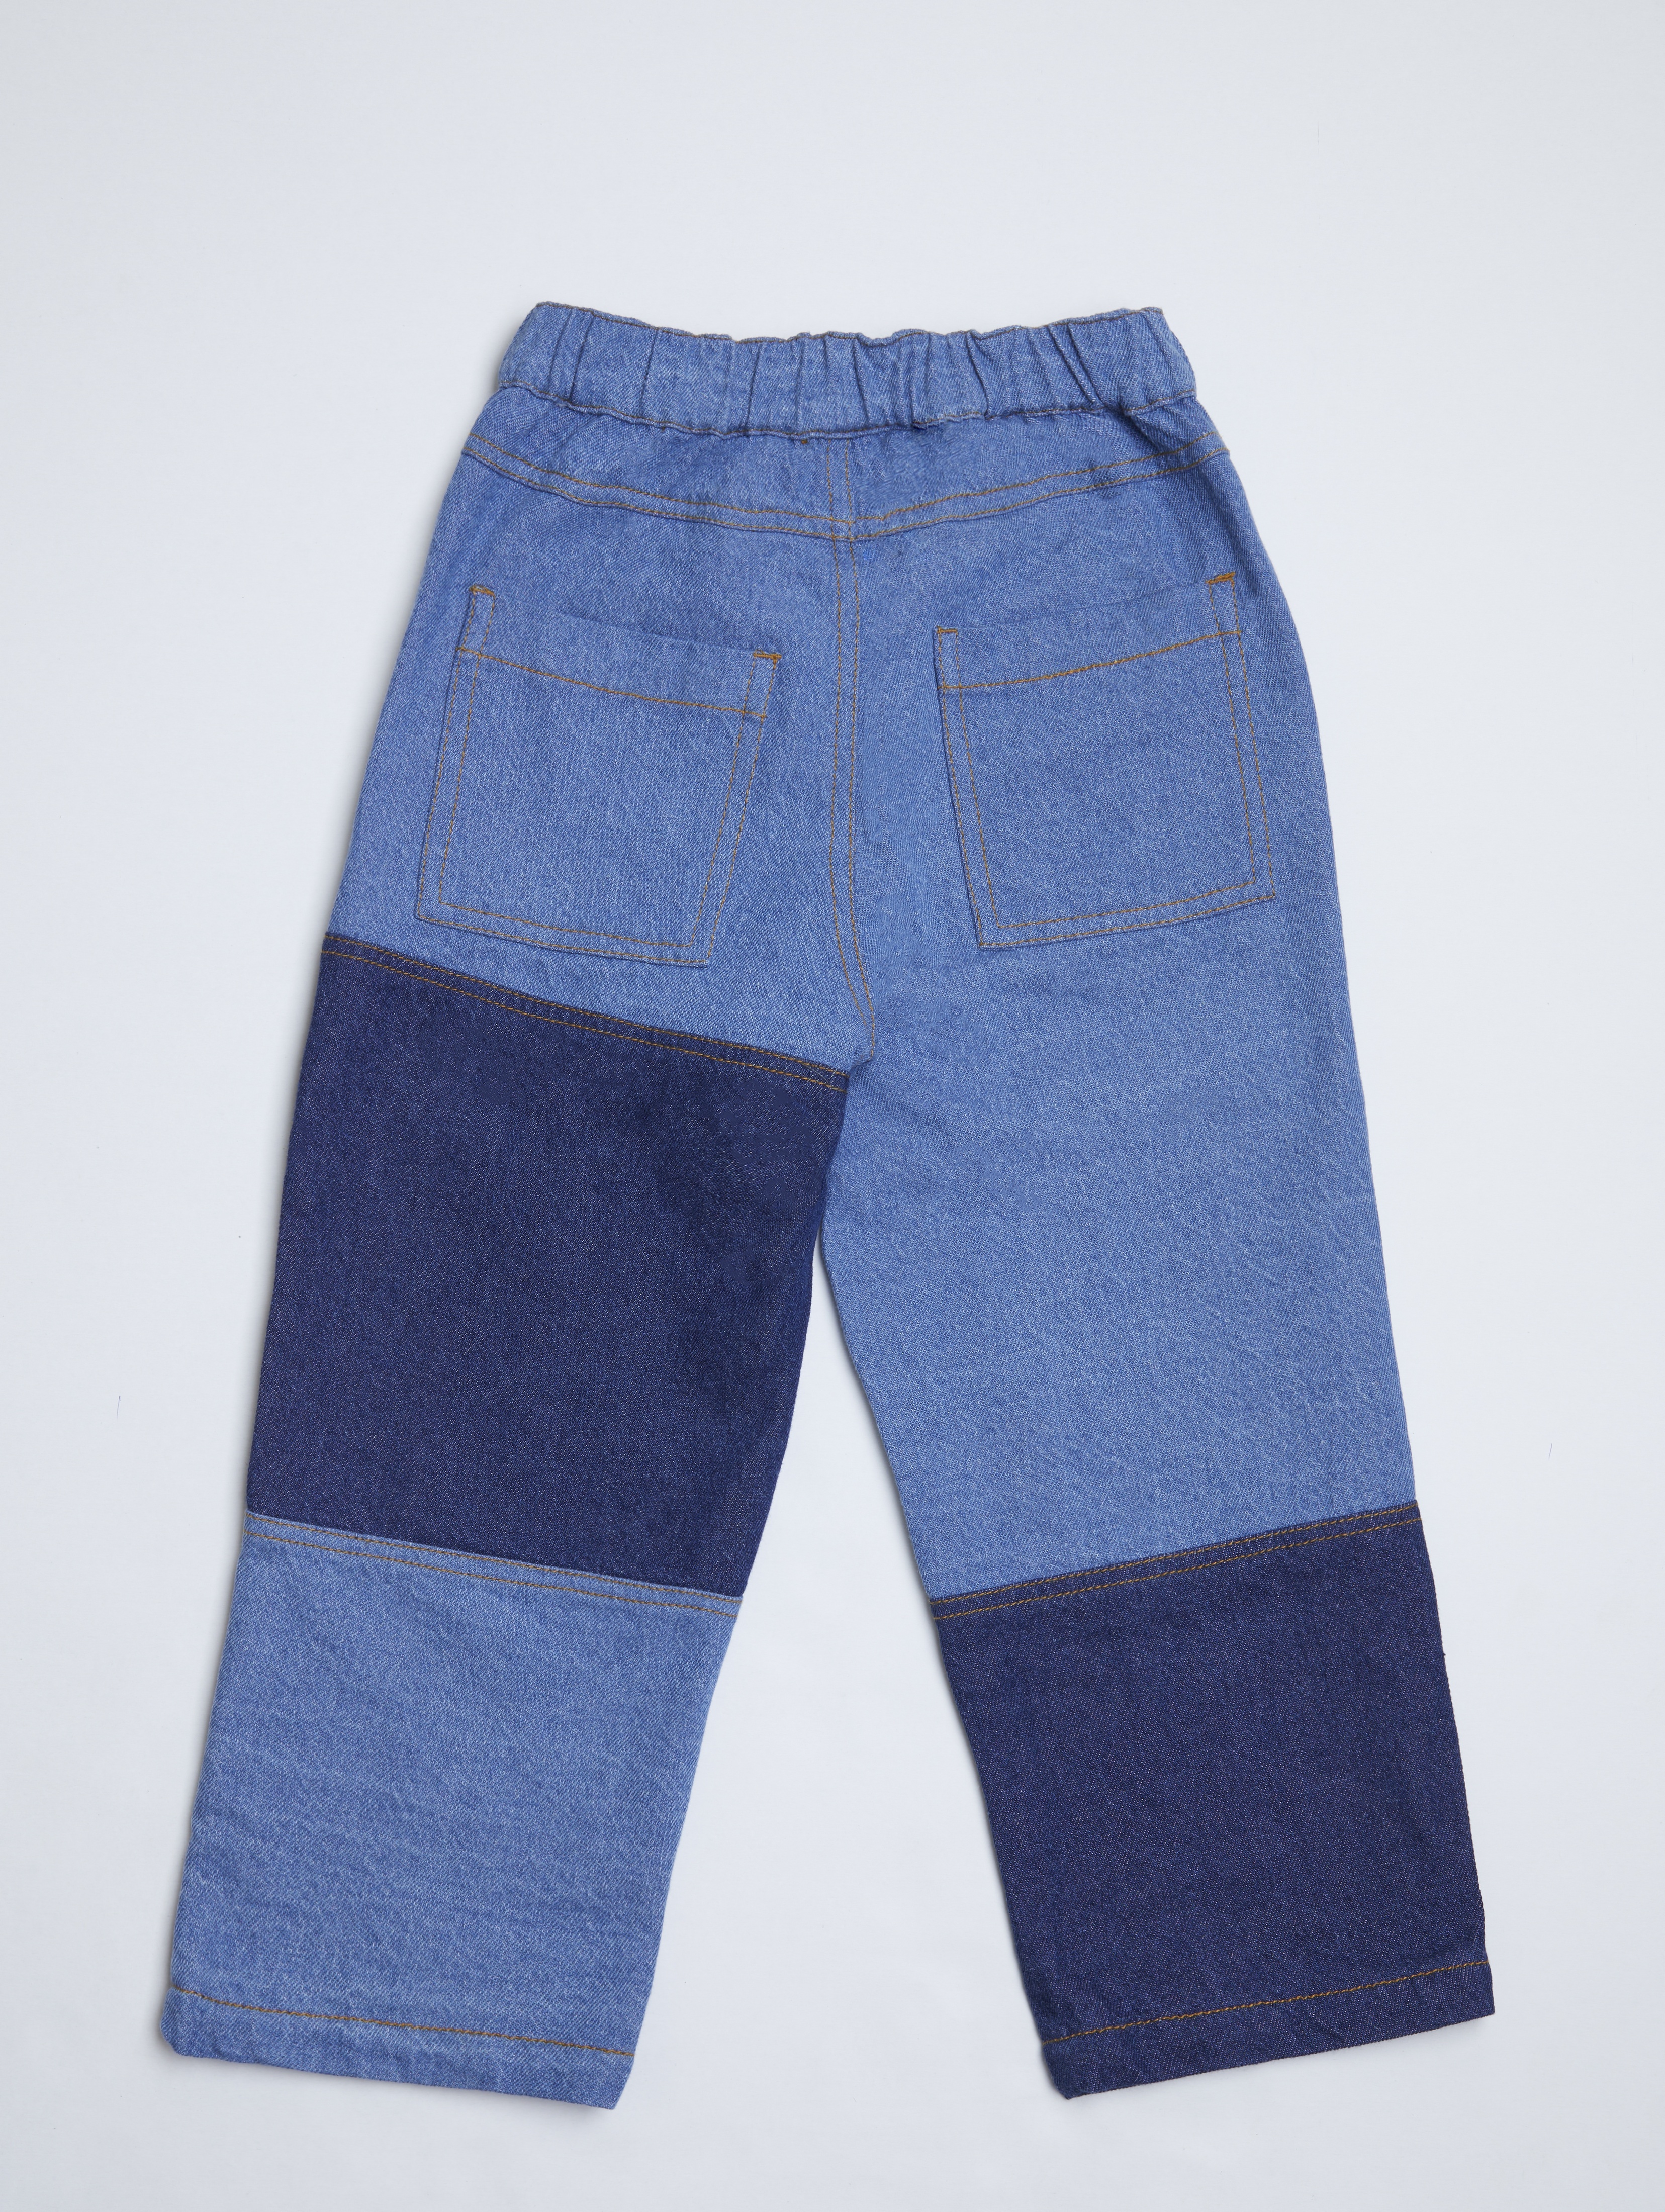 Spodnie jeansowe dla dziecka - unisex - Limited Edition